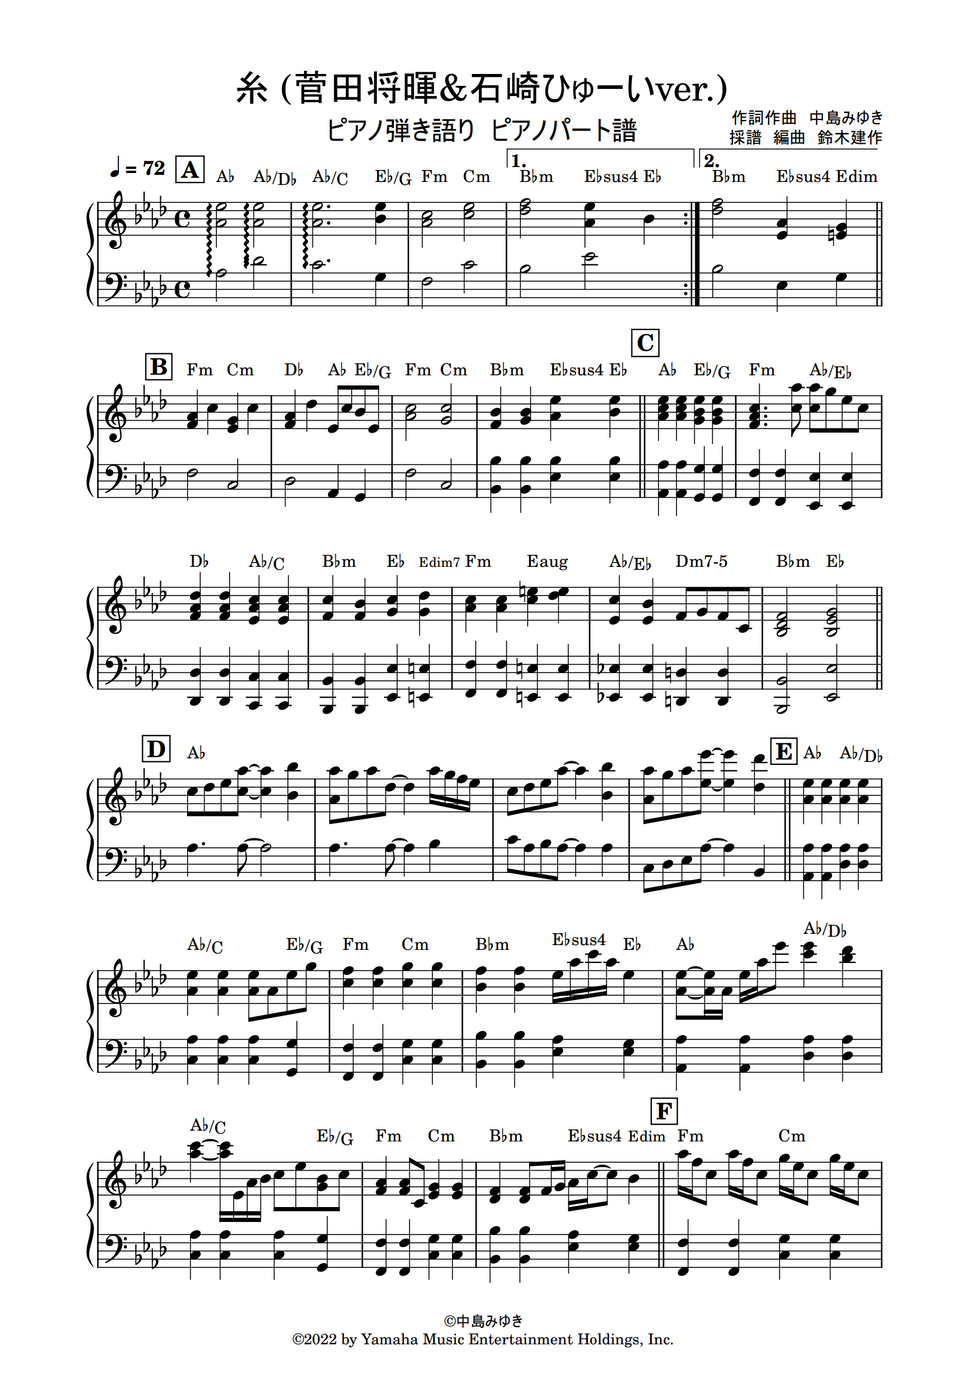 中島みゆき - 糸(菅田将暉石崎ひゅーいver) (ピアノ伴奏パート譜) by 鈴木建作 Sheet